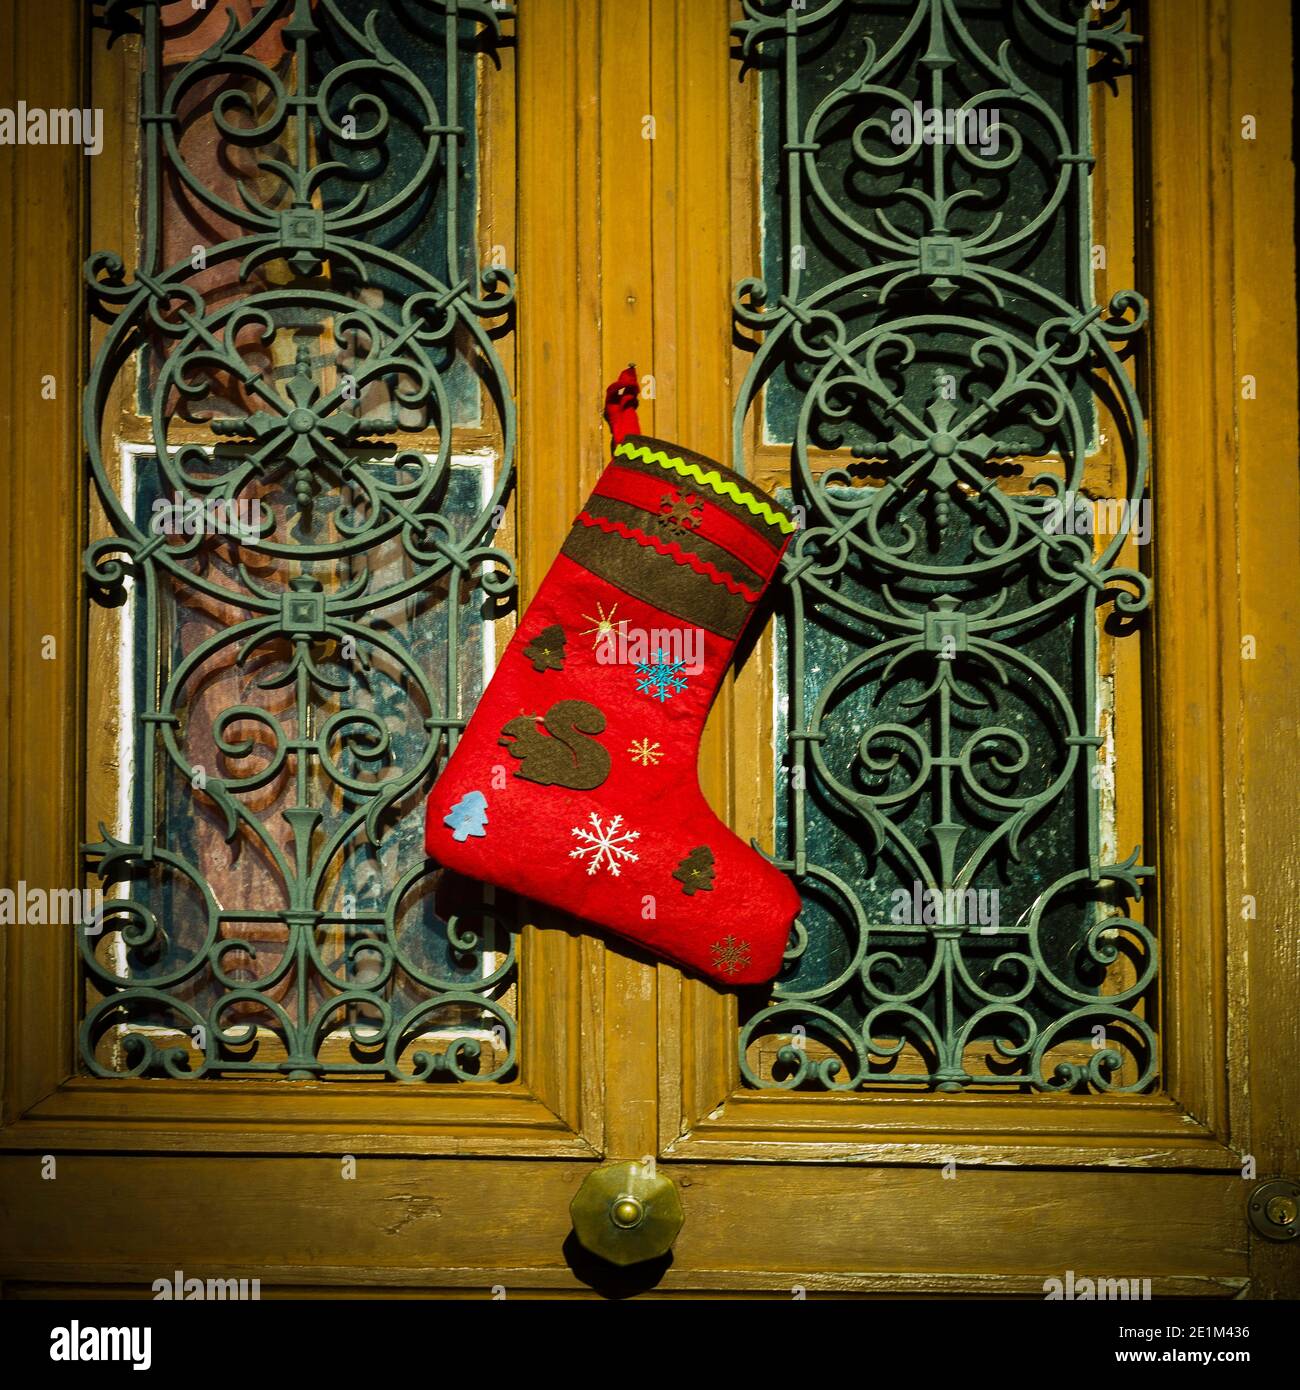 Calzino di Natale impiccato. Francia Foto Stock